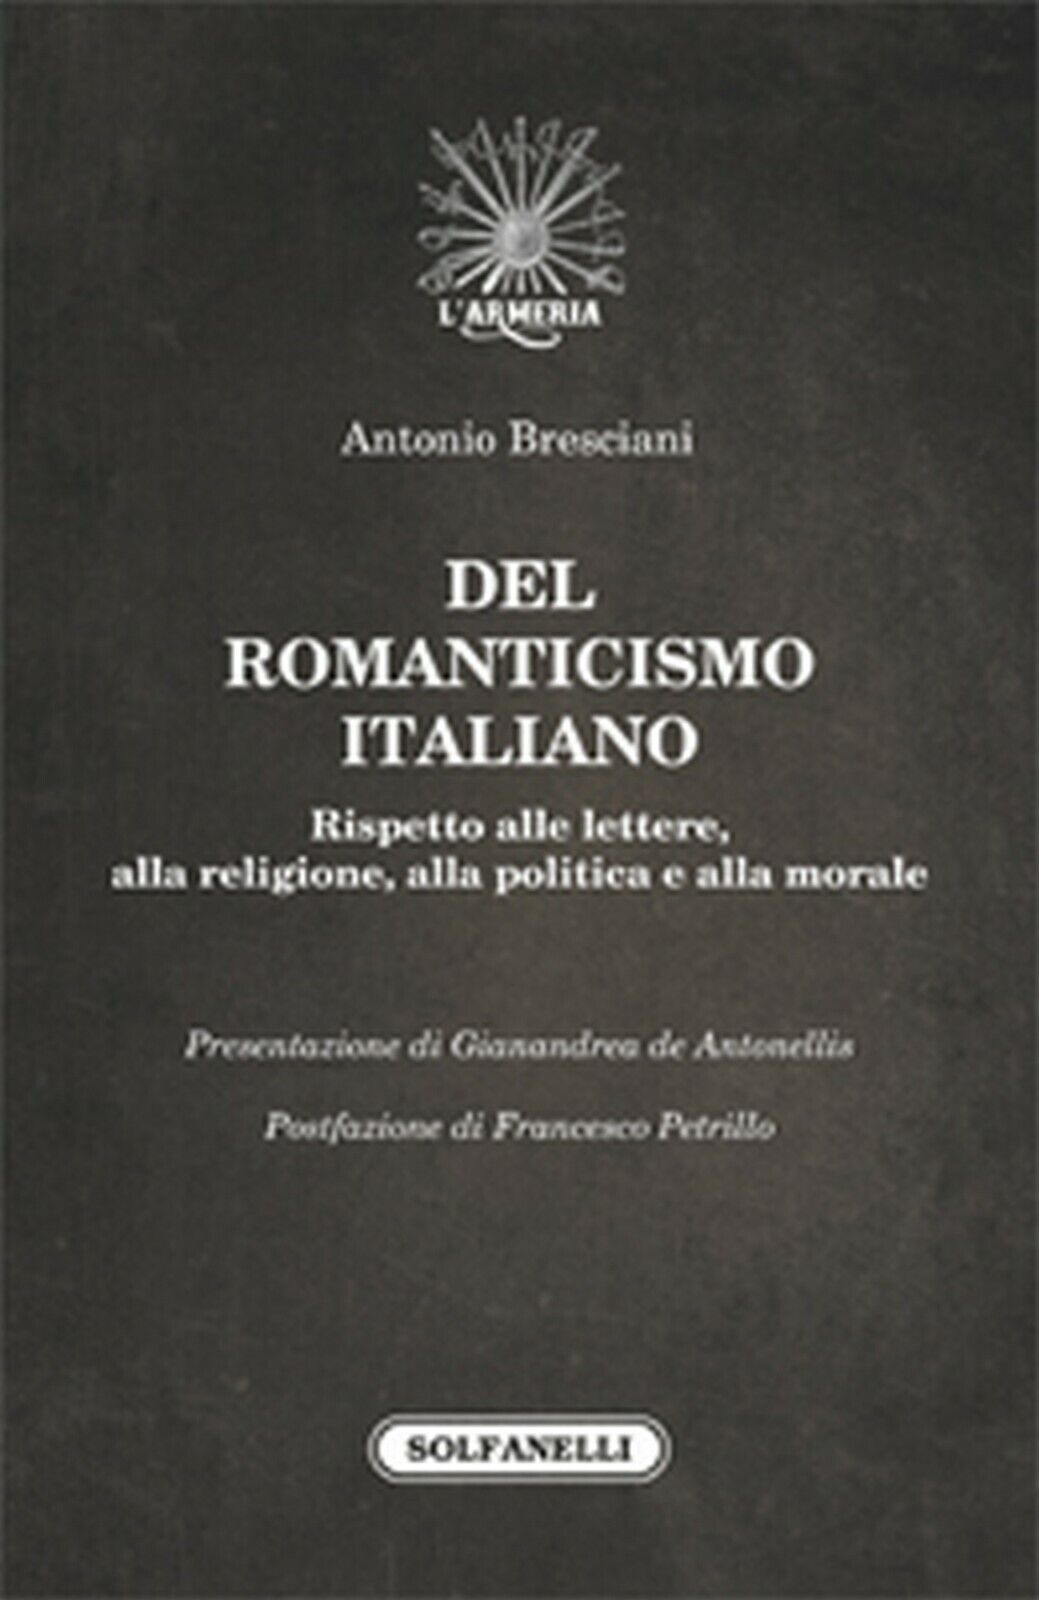 DEL ROMANTICISMO ITALIANO  di Antonio Bresciani,  Solfanelli Edizioni